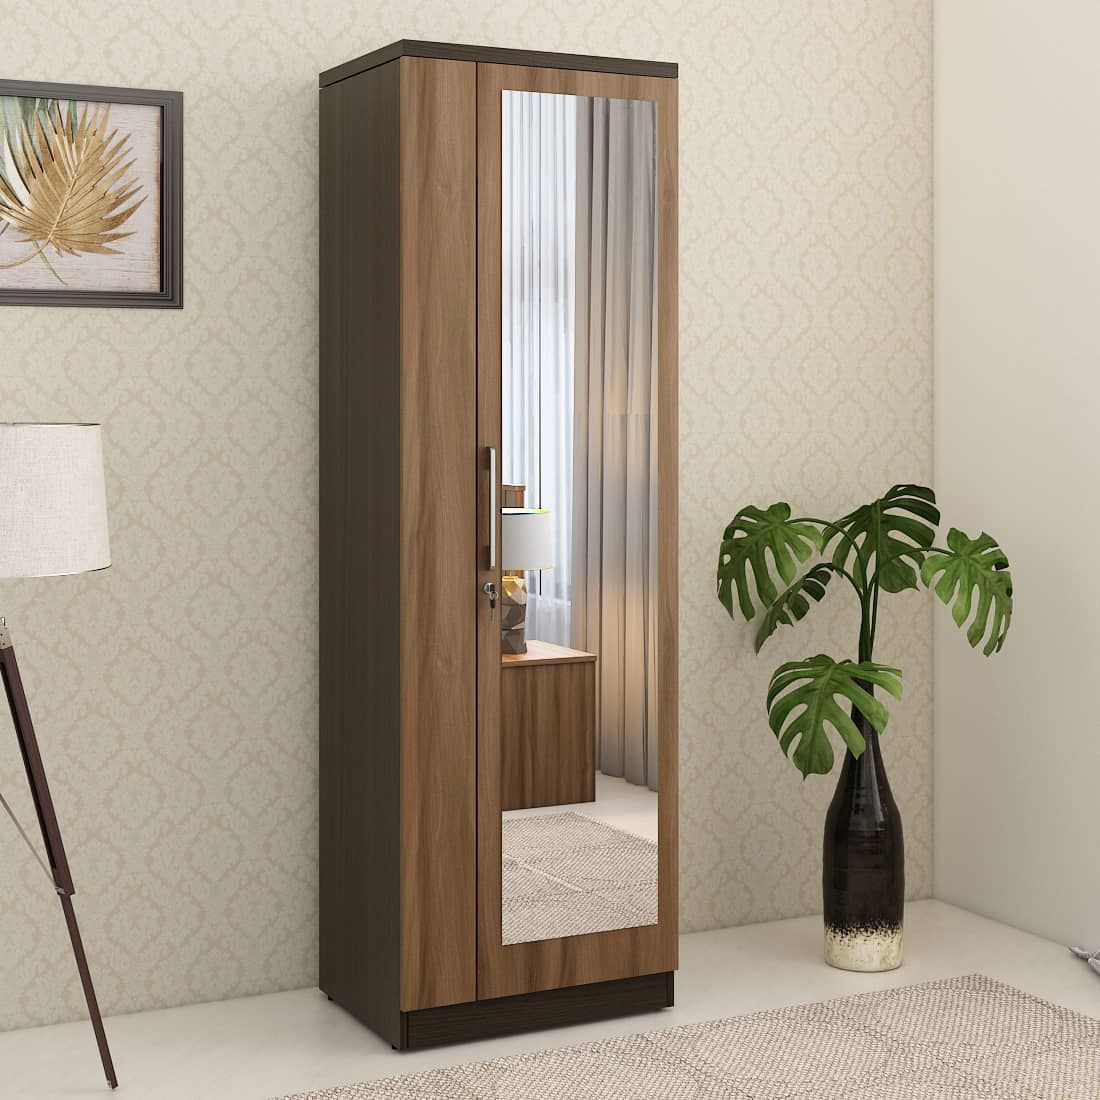 Kosmo Ken 1 Door Wardrobe With Mirror Walnut Bronze Woodpore | Spacewood  Ecommerce Pertaining To 1 Door Mirrored Wardrobes (View 3 of 15)